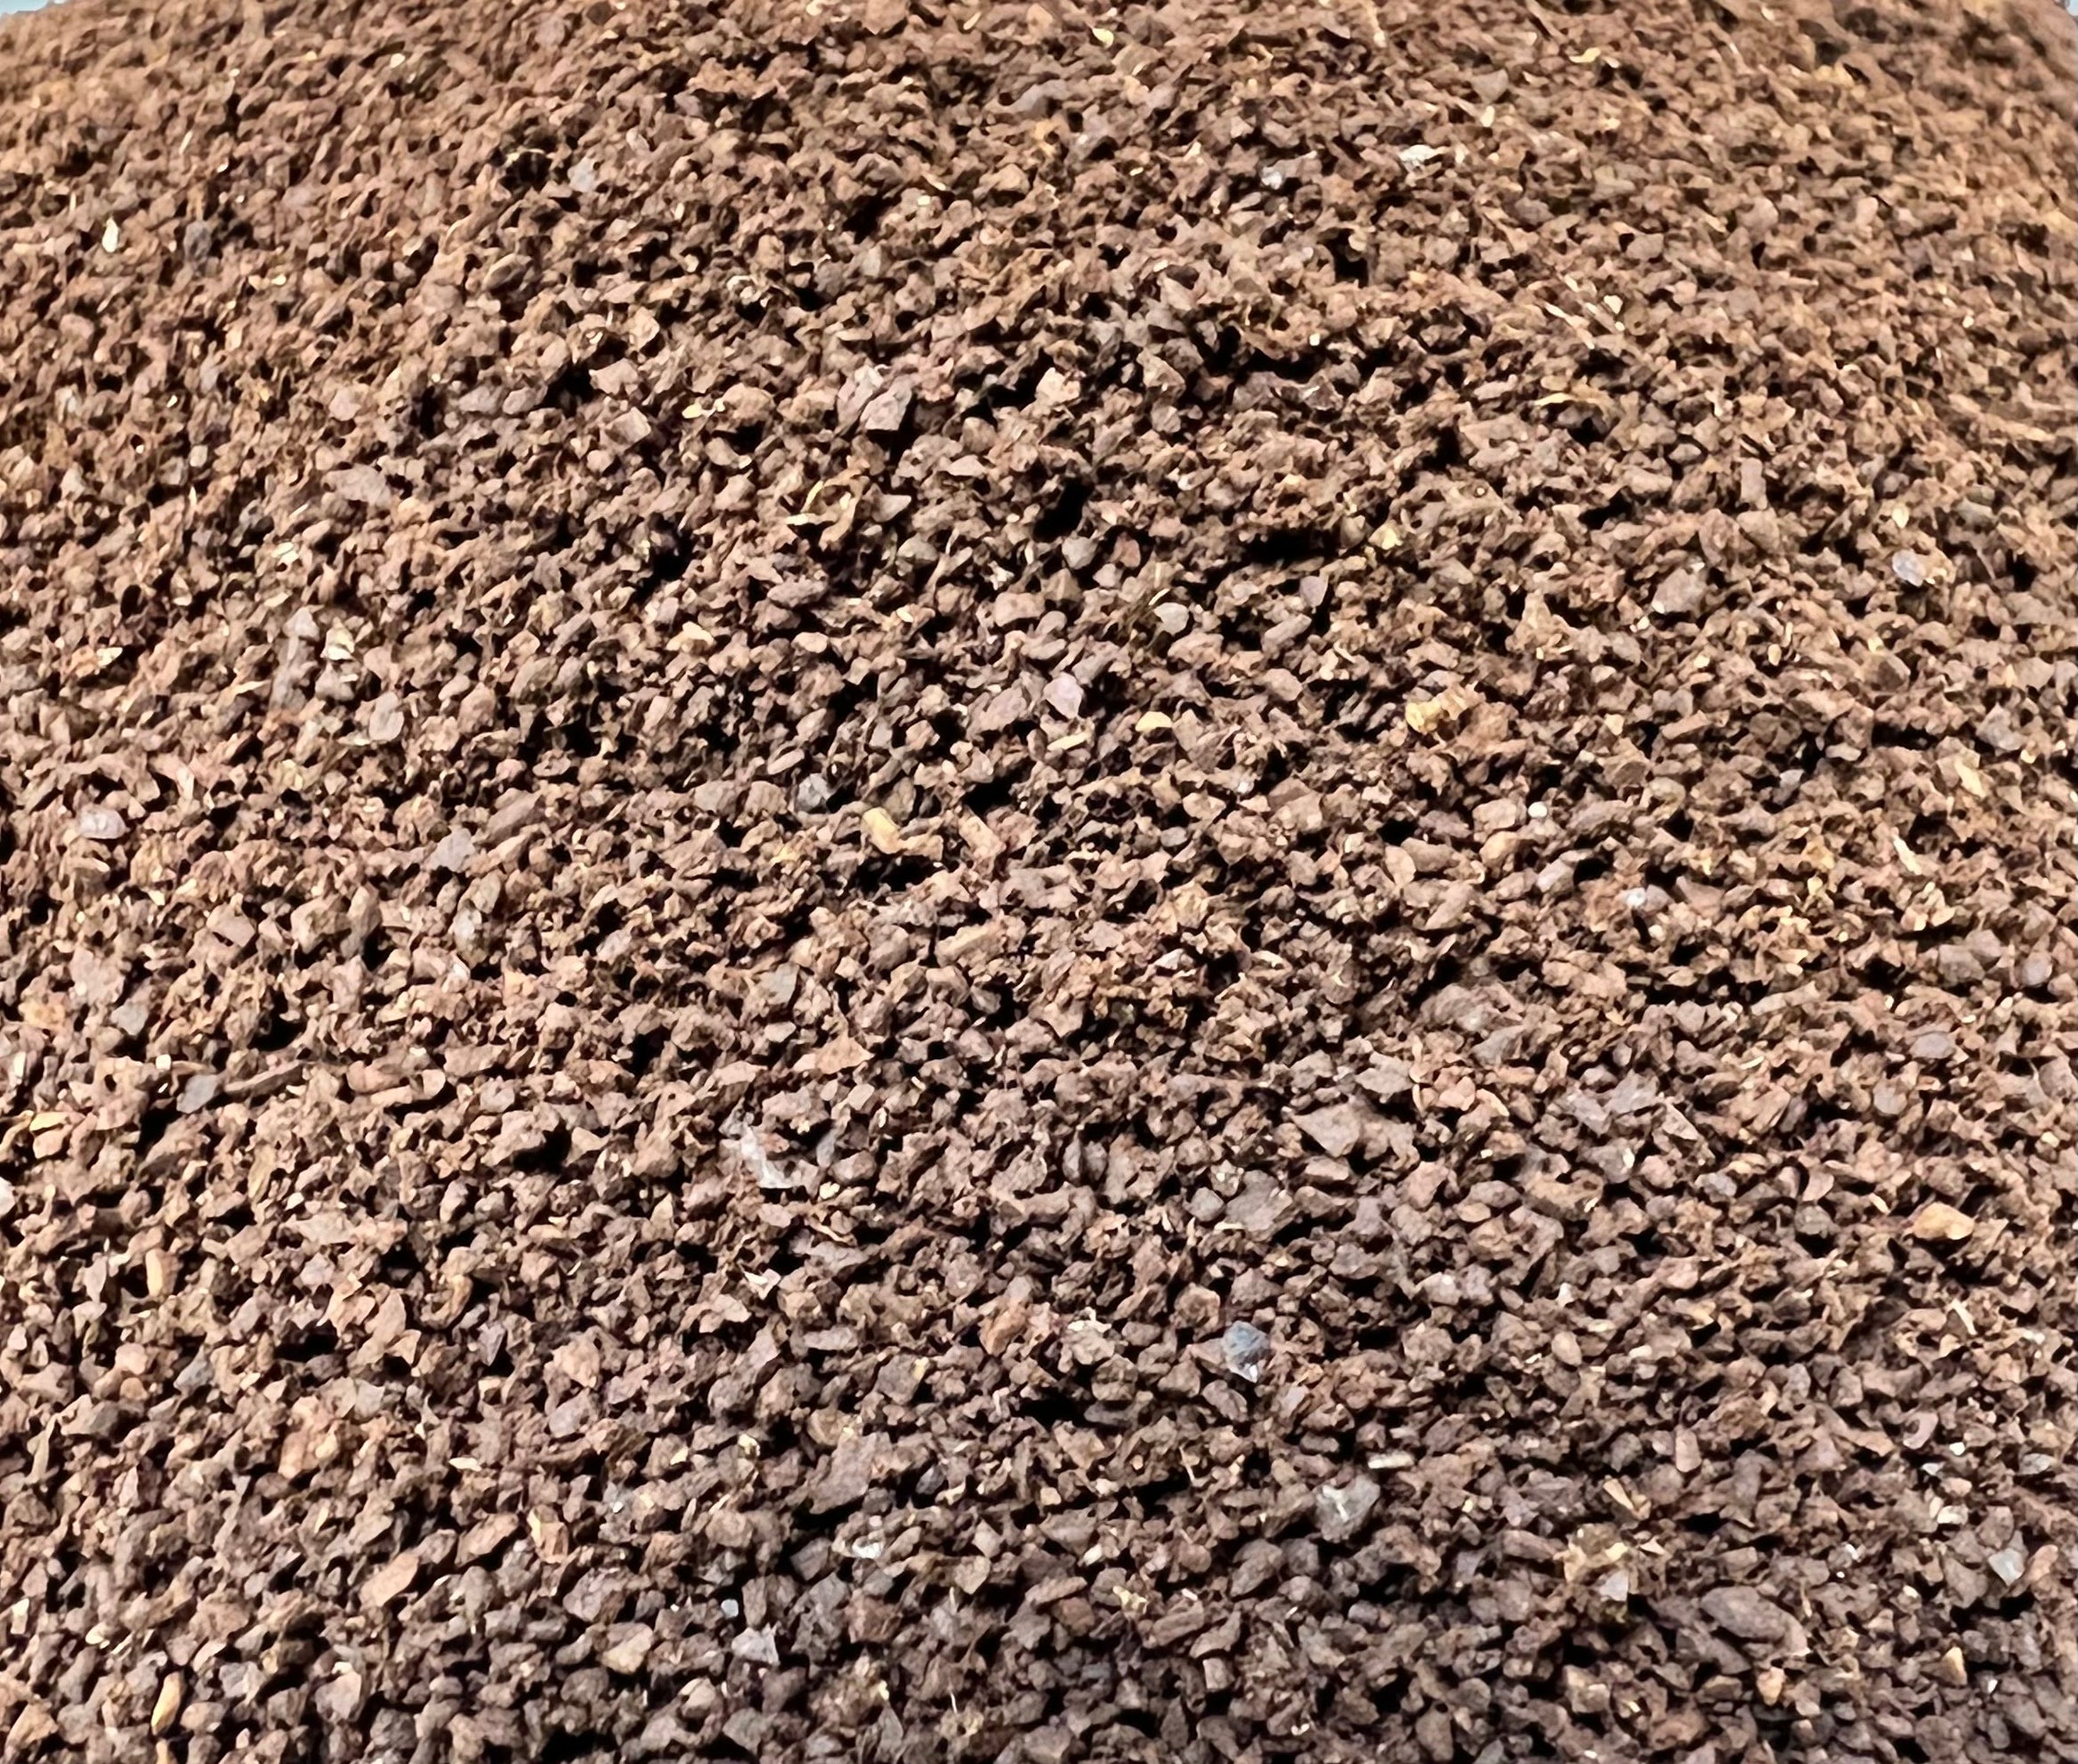 Kenya AA  Calusa Coffee Roasters